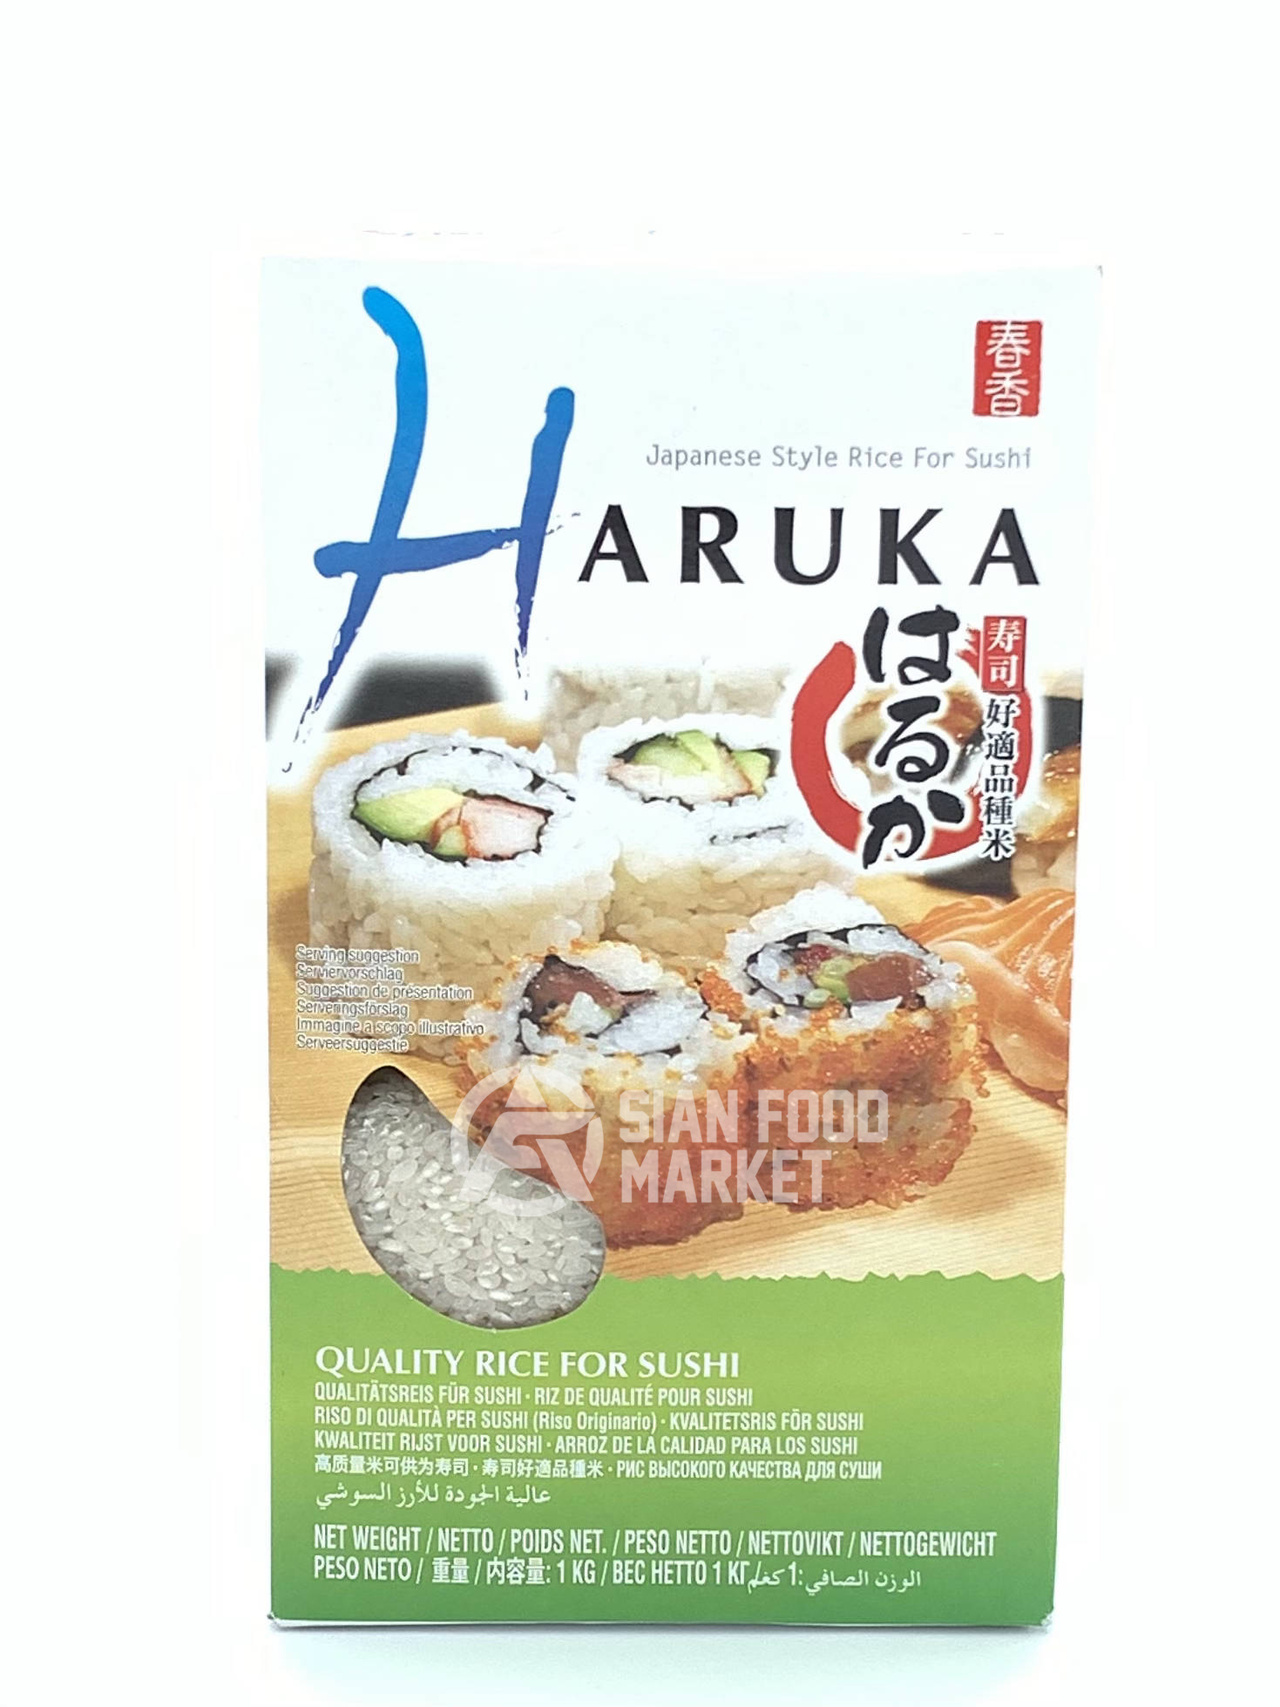 Haruka Japanese Style Rice for Sushi 1Kg